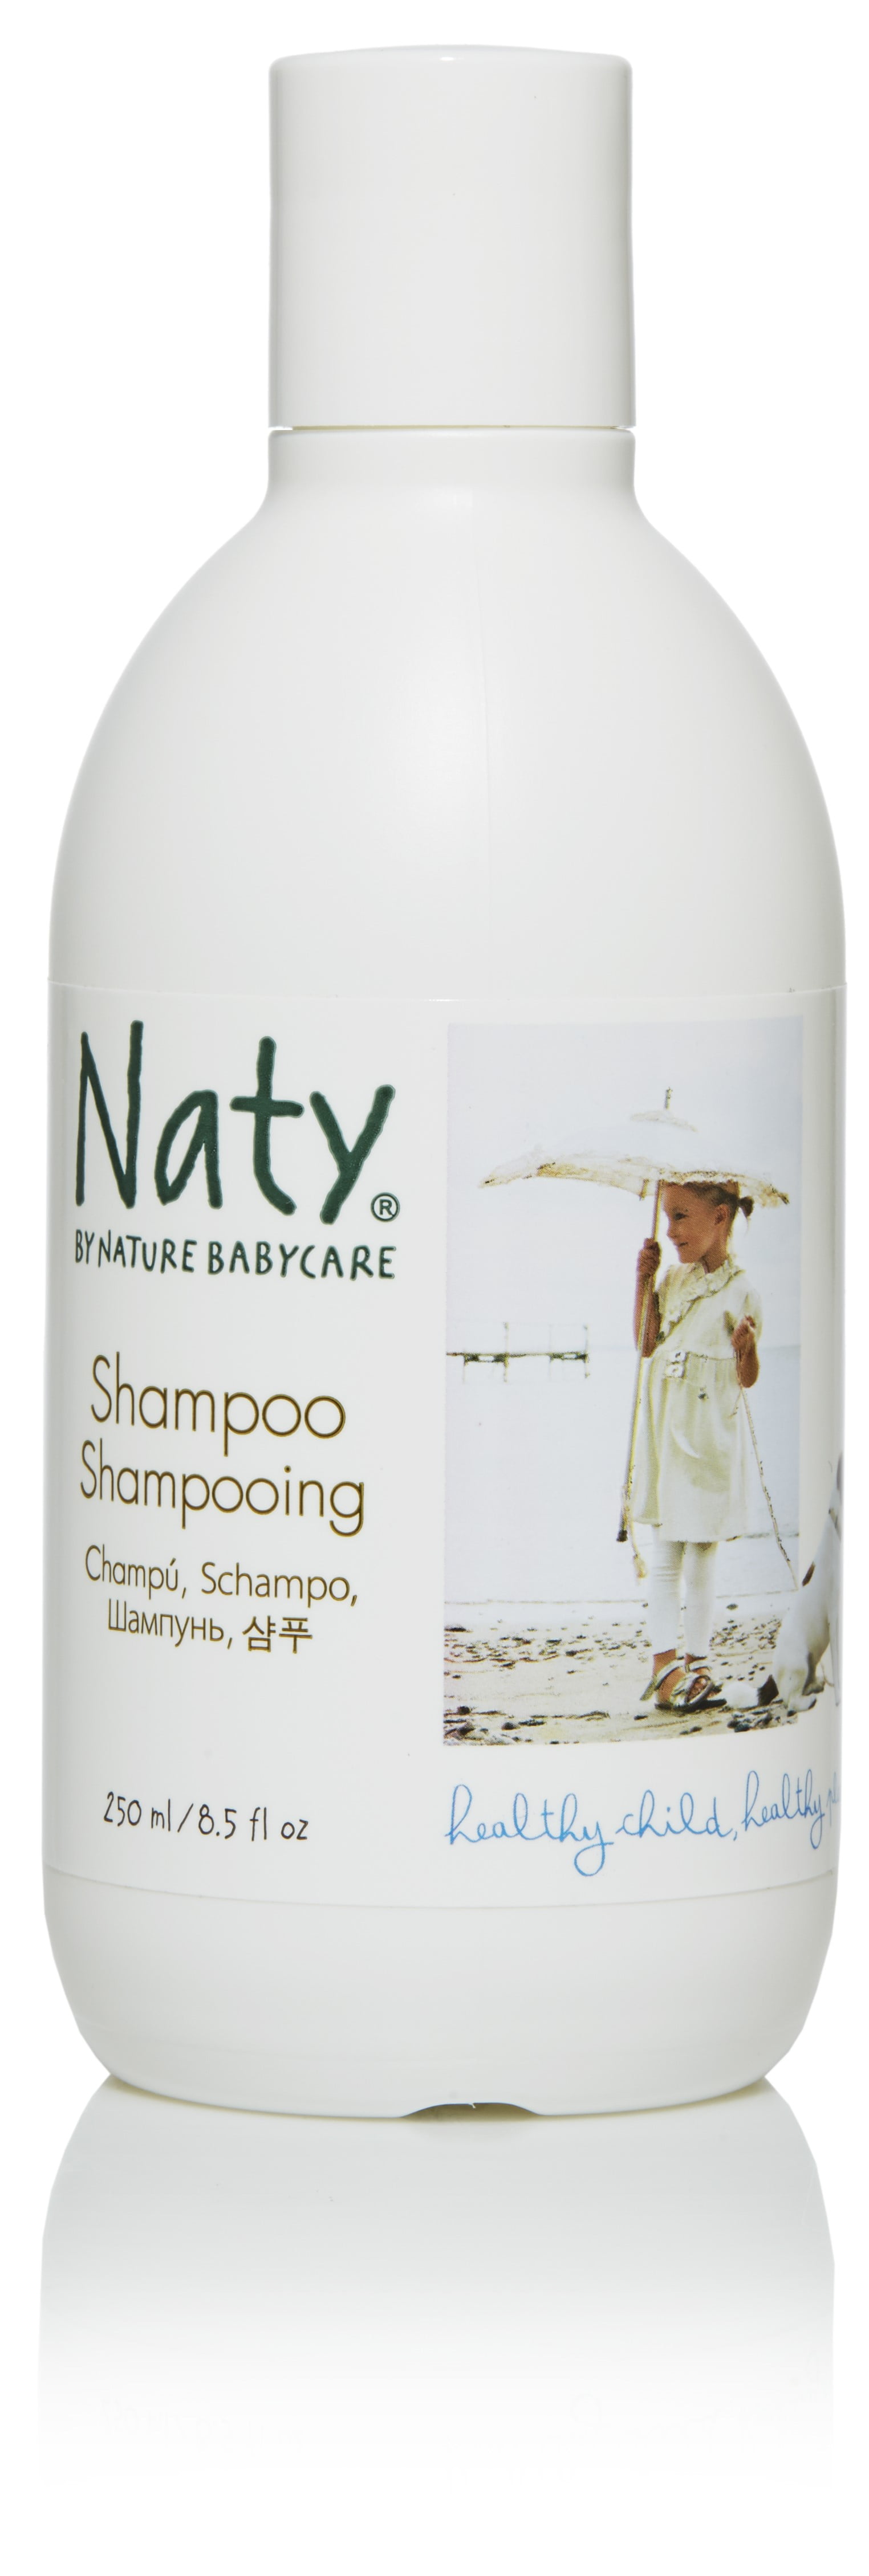 naty shampoo